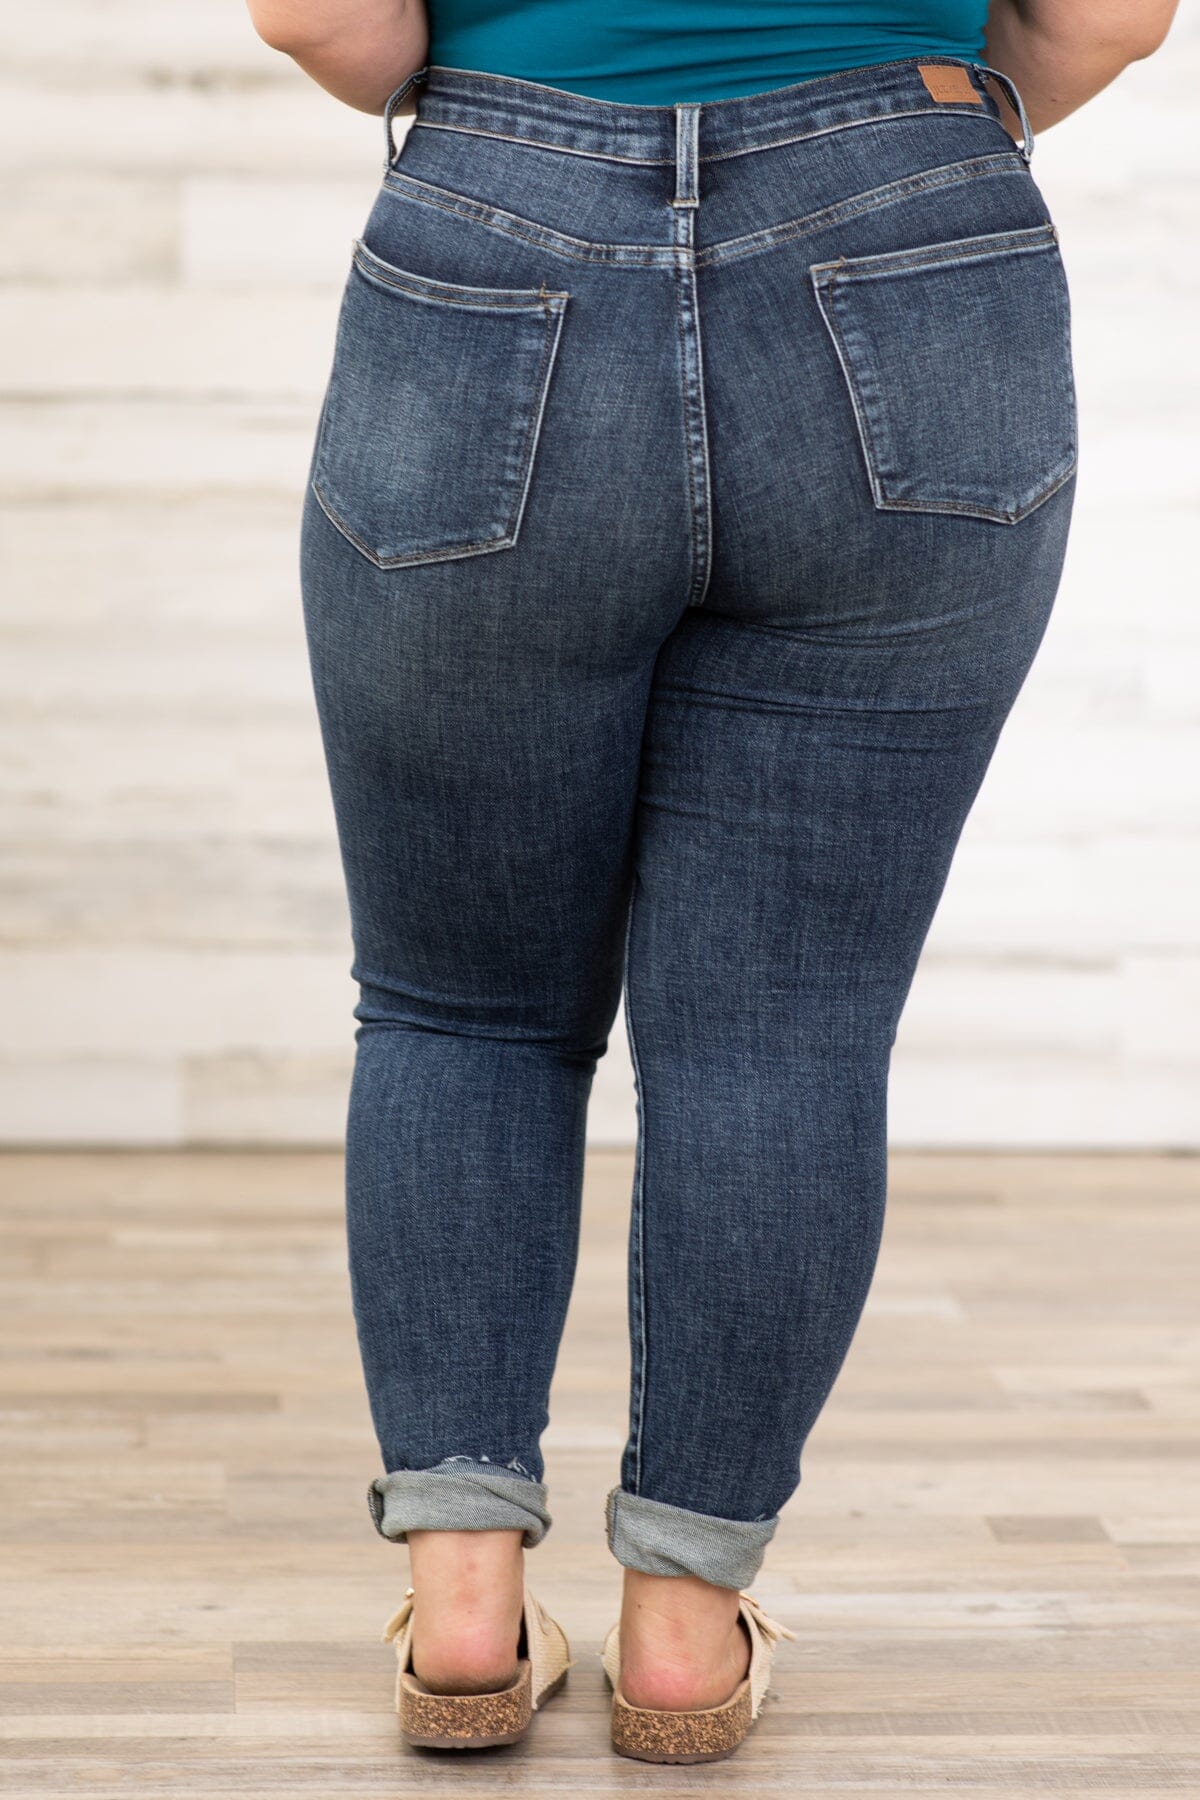 Judy Blue Dark Wash Tummy Control Jeans - Filly Flair